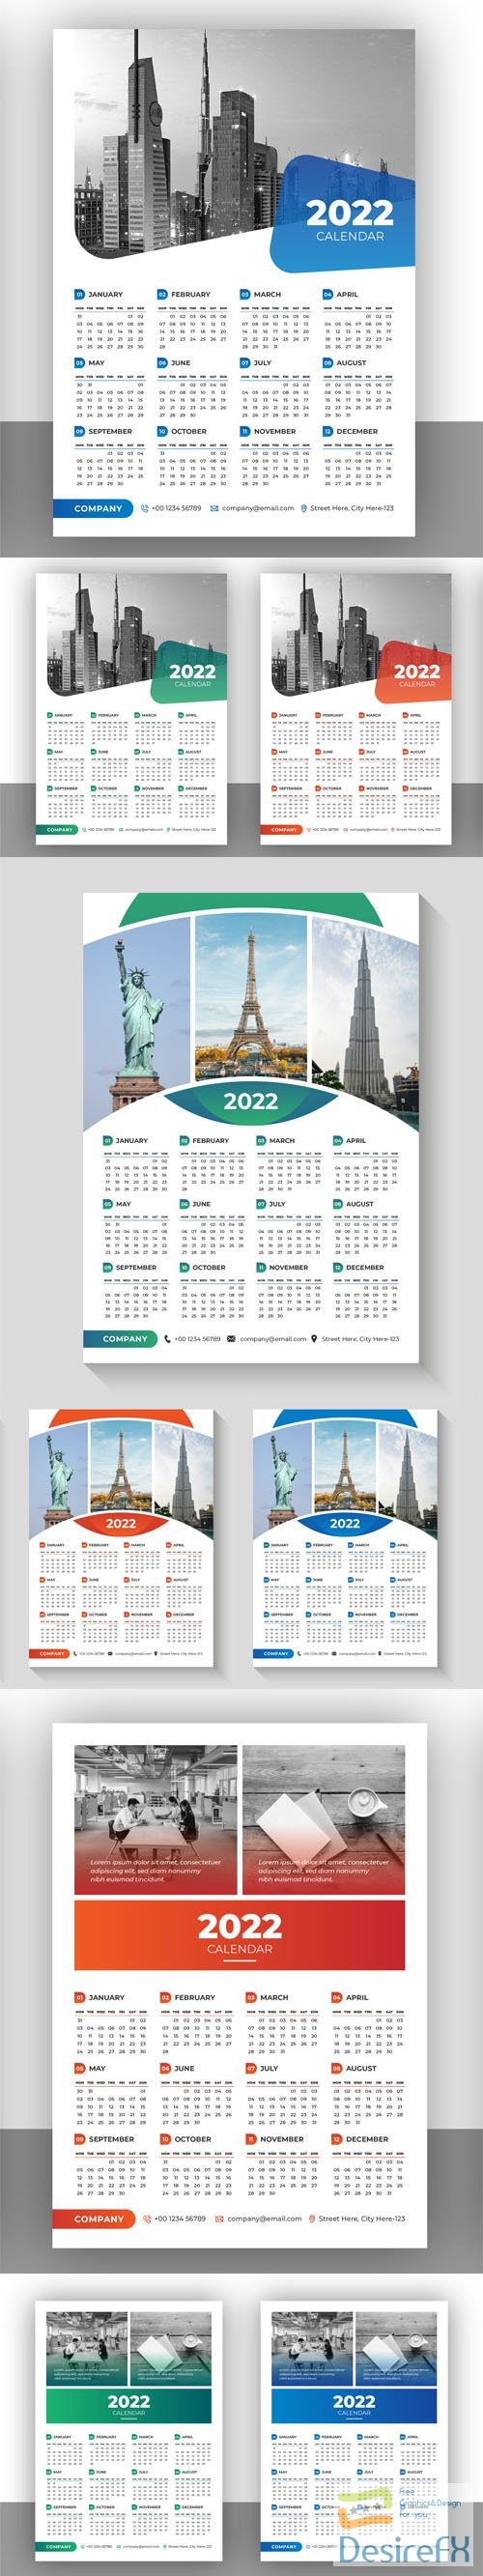 18 Calendar 2022 Vector Templates